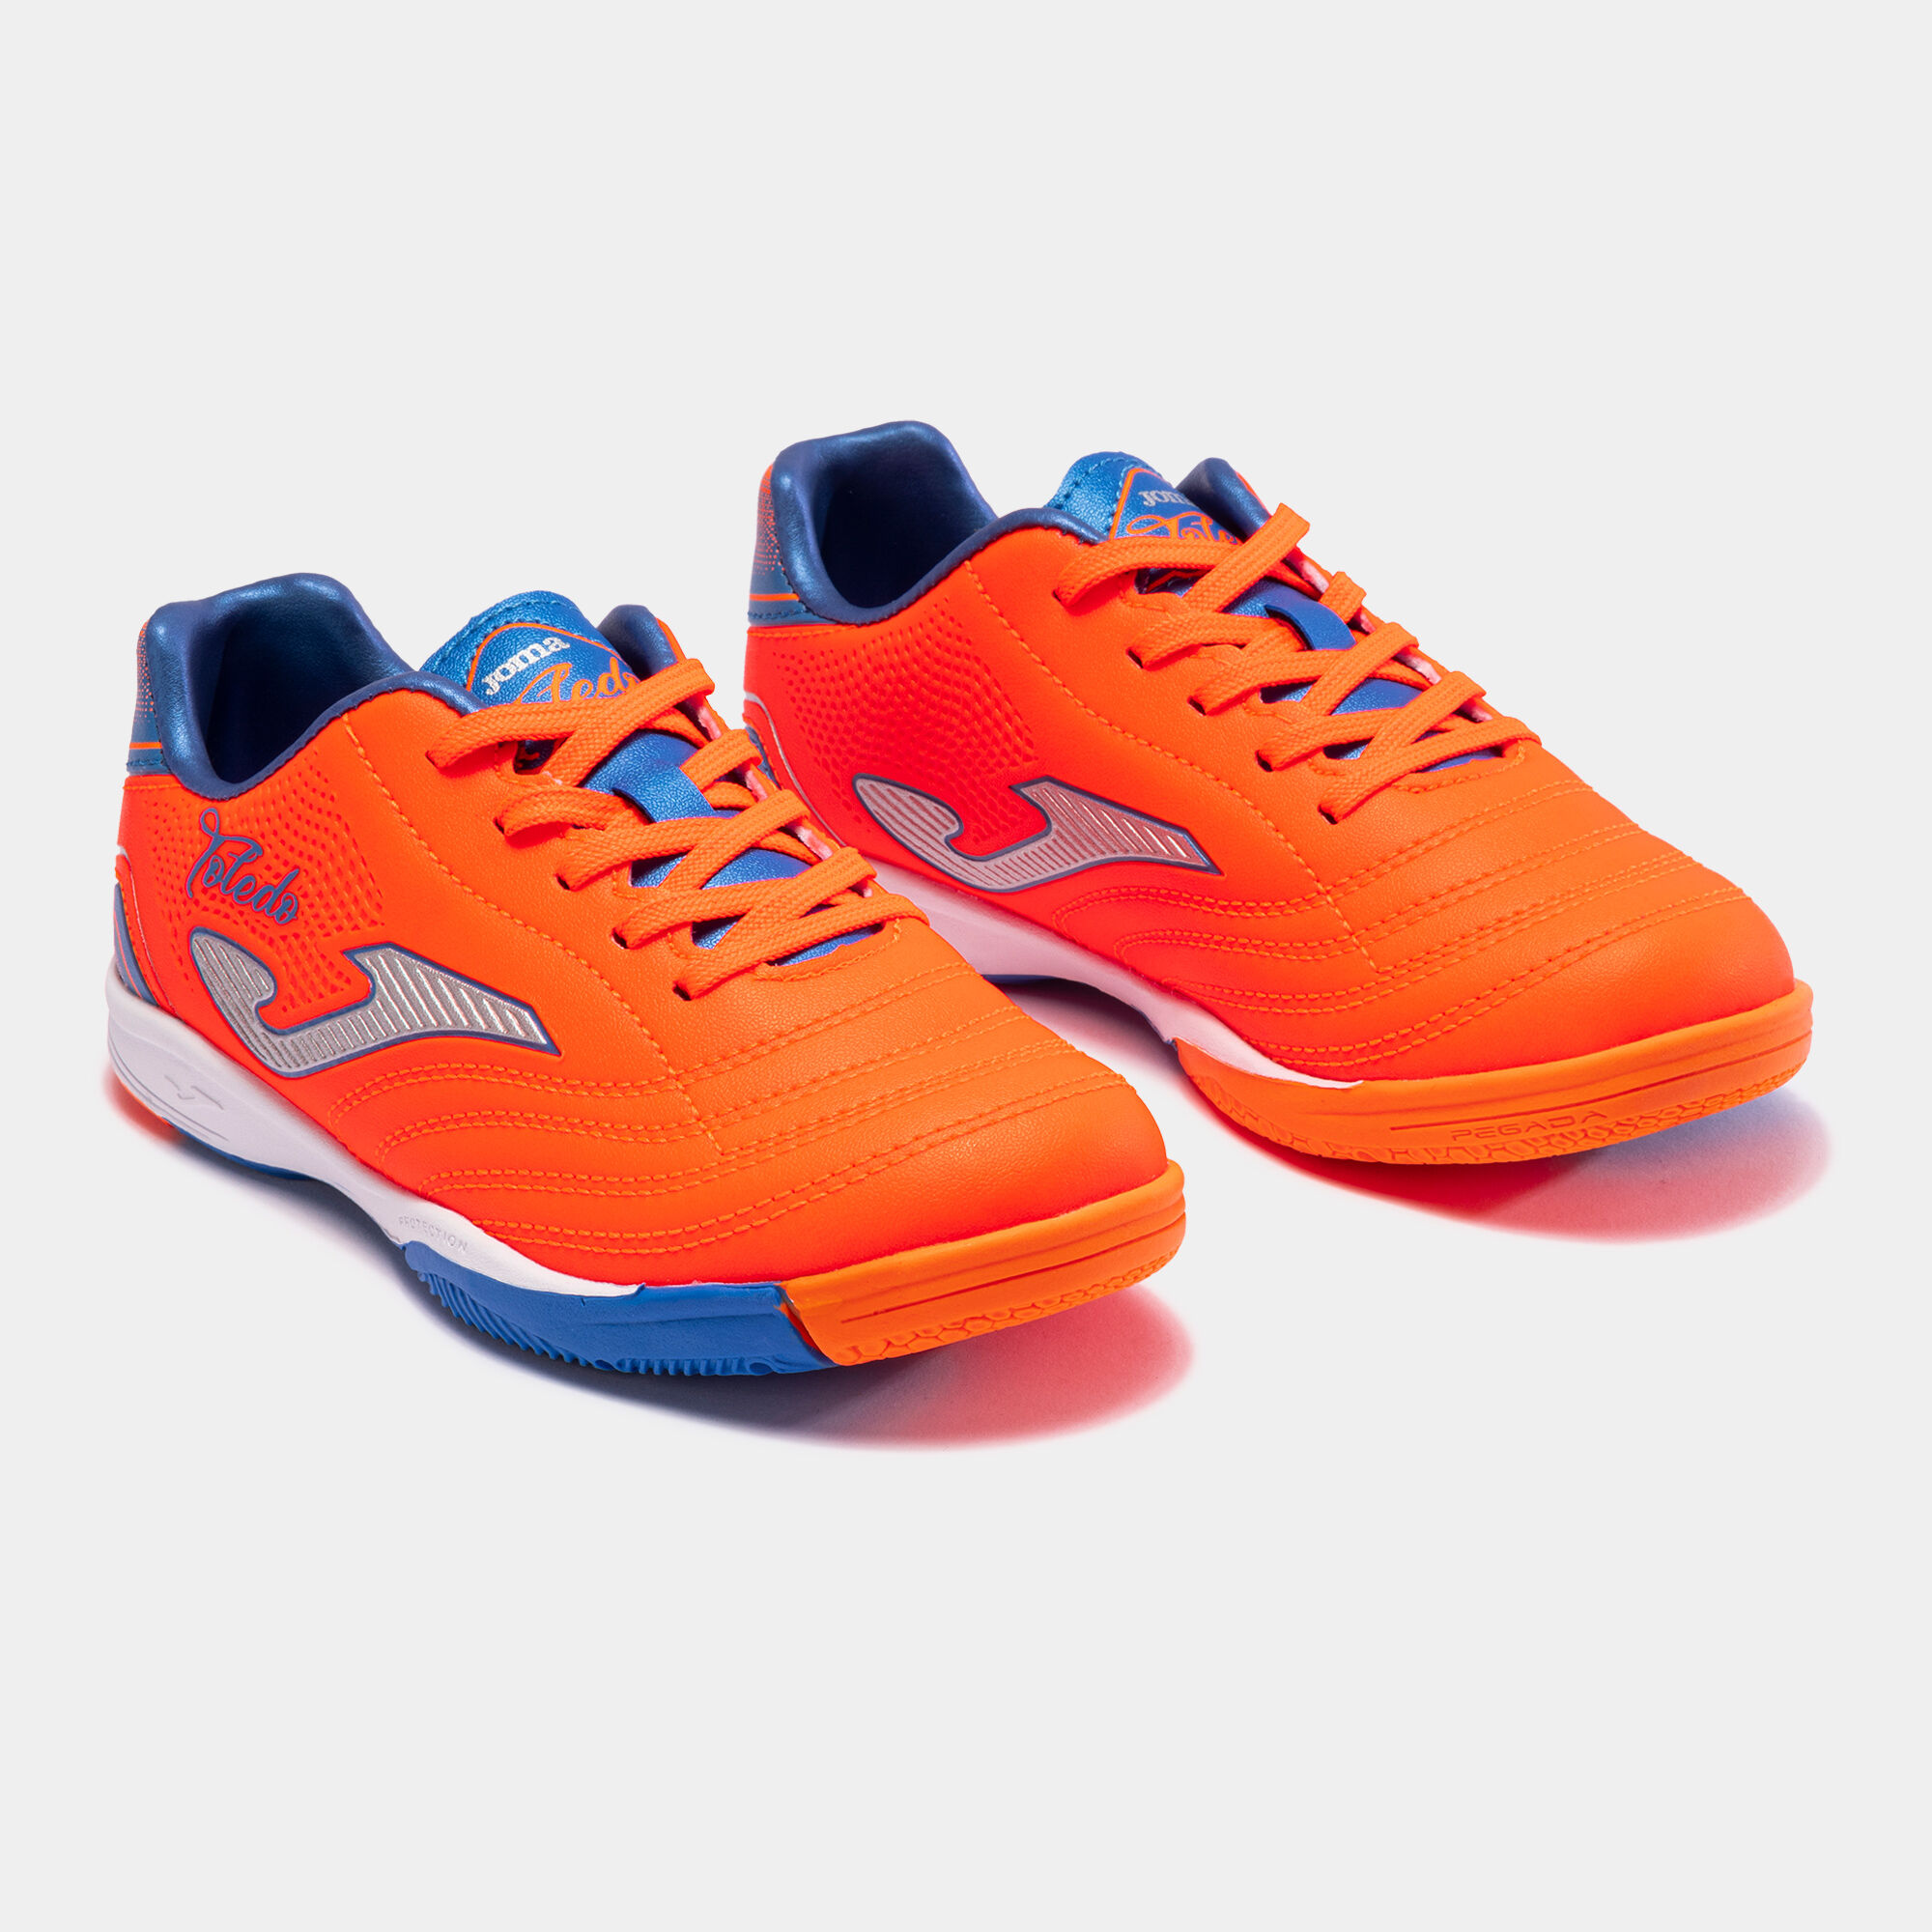 Chaussures futsal Toledo Jr 23 indoor junior orange bleu roi